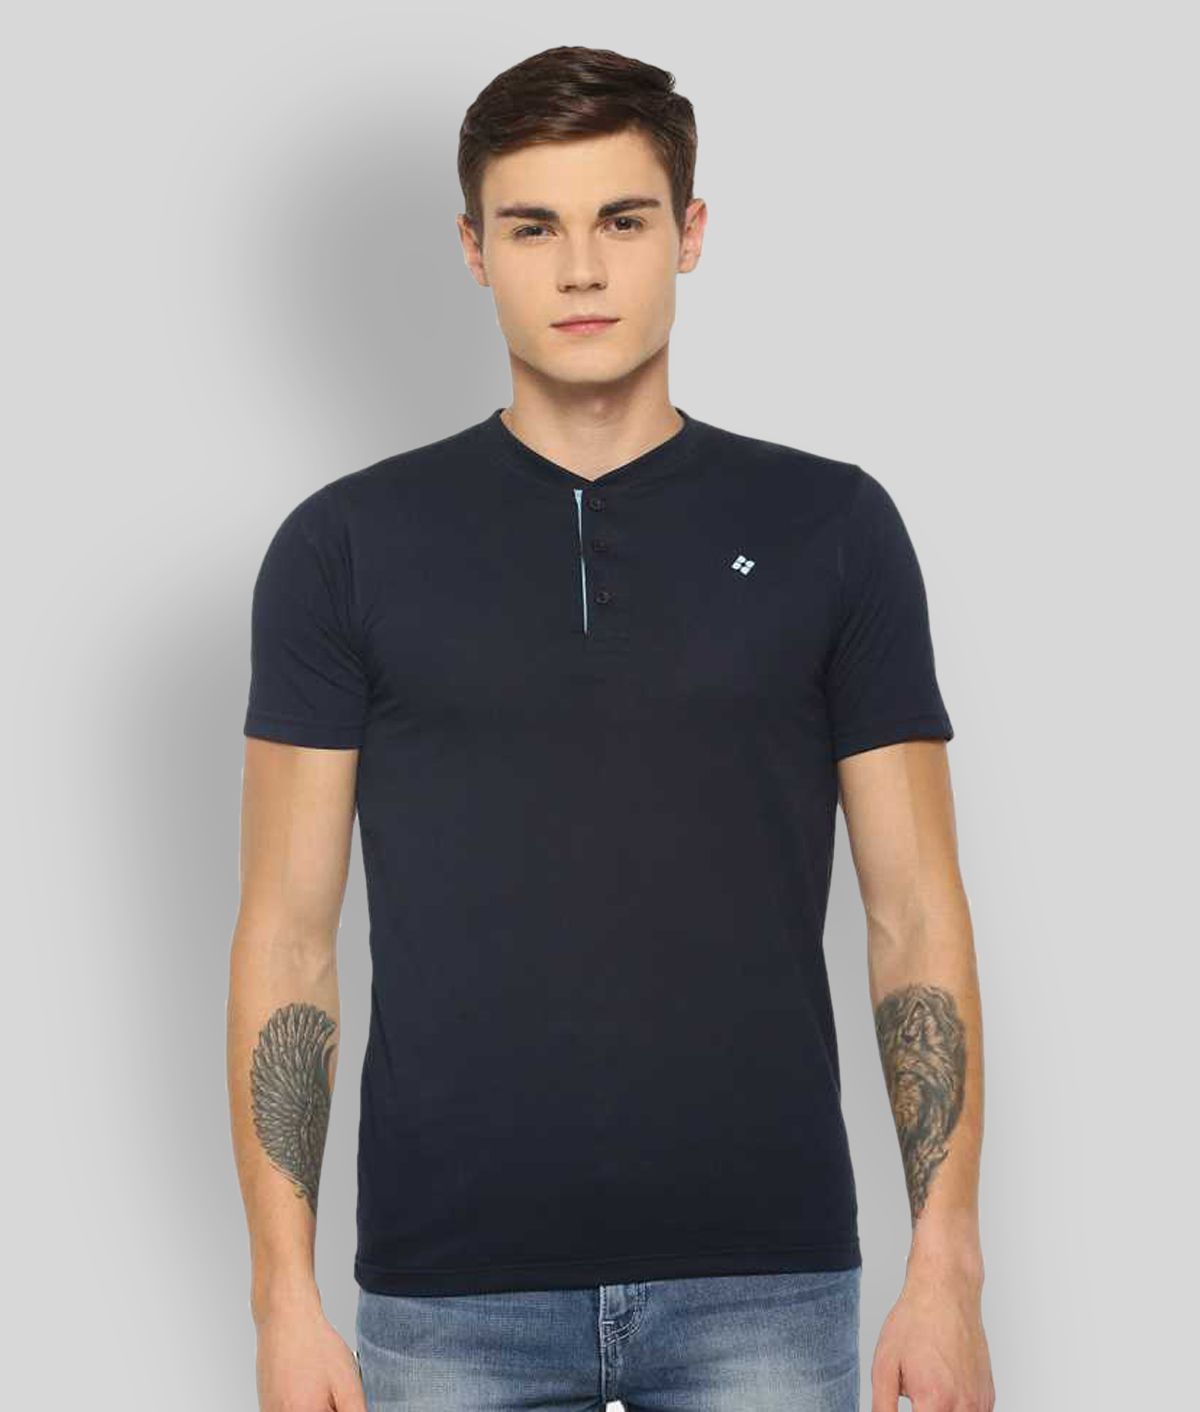 Dollar - Navy Blue Cotton Blend Regular Fit Men's T-Shirt ( Pack of 1 )